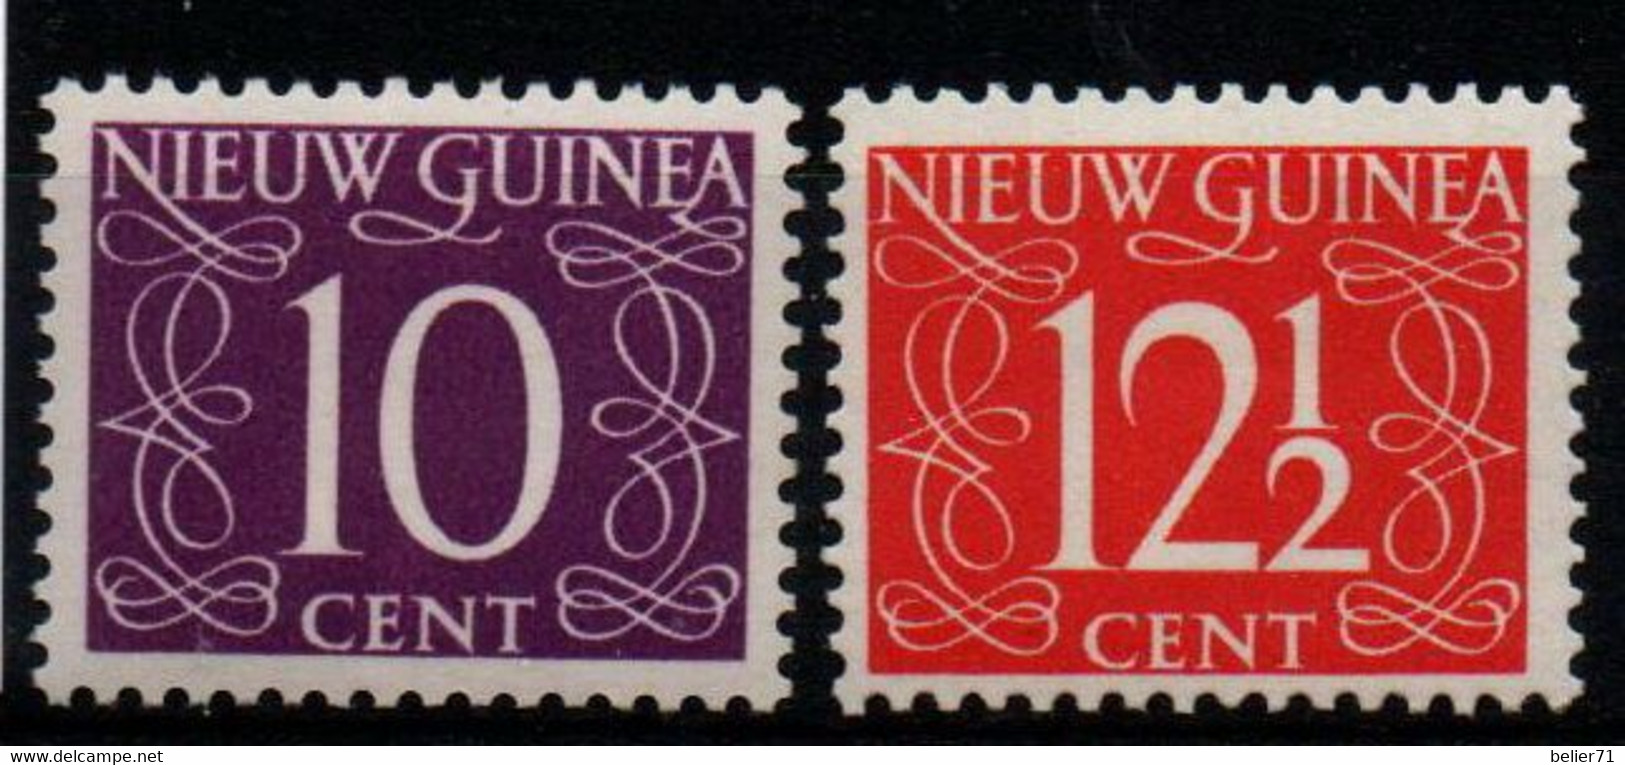 Pays Bas : Nouvelle Guinée N° 8 Et 9 X Neufs Avec Traces De Charnière Année 1950 - Nouvelle Guinée Néerlandaise